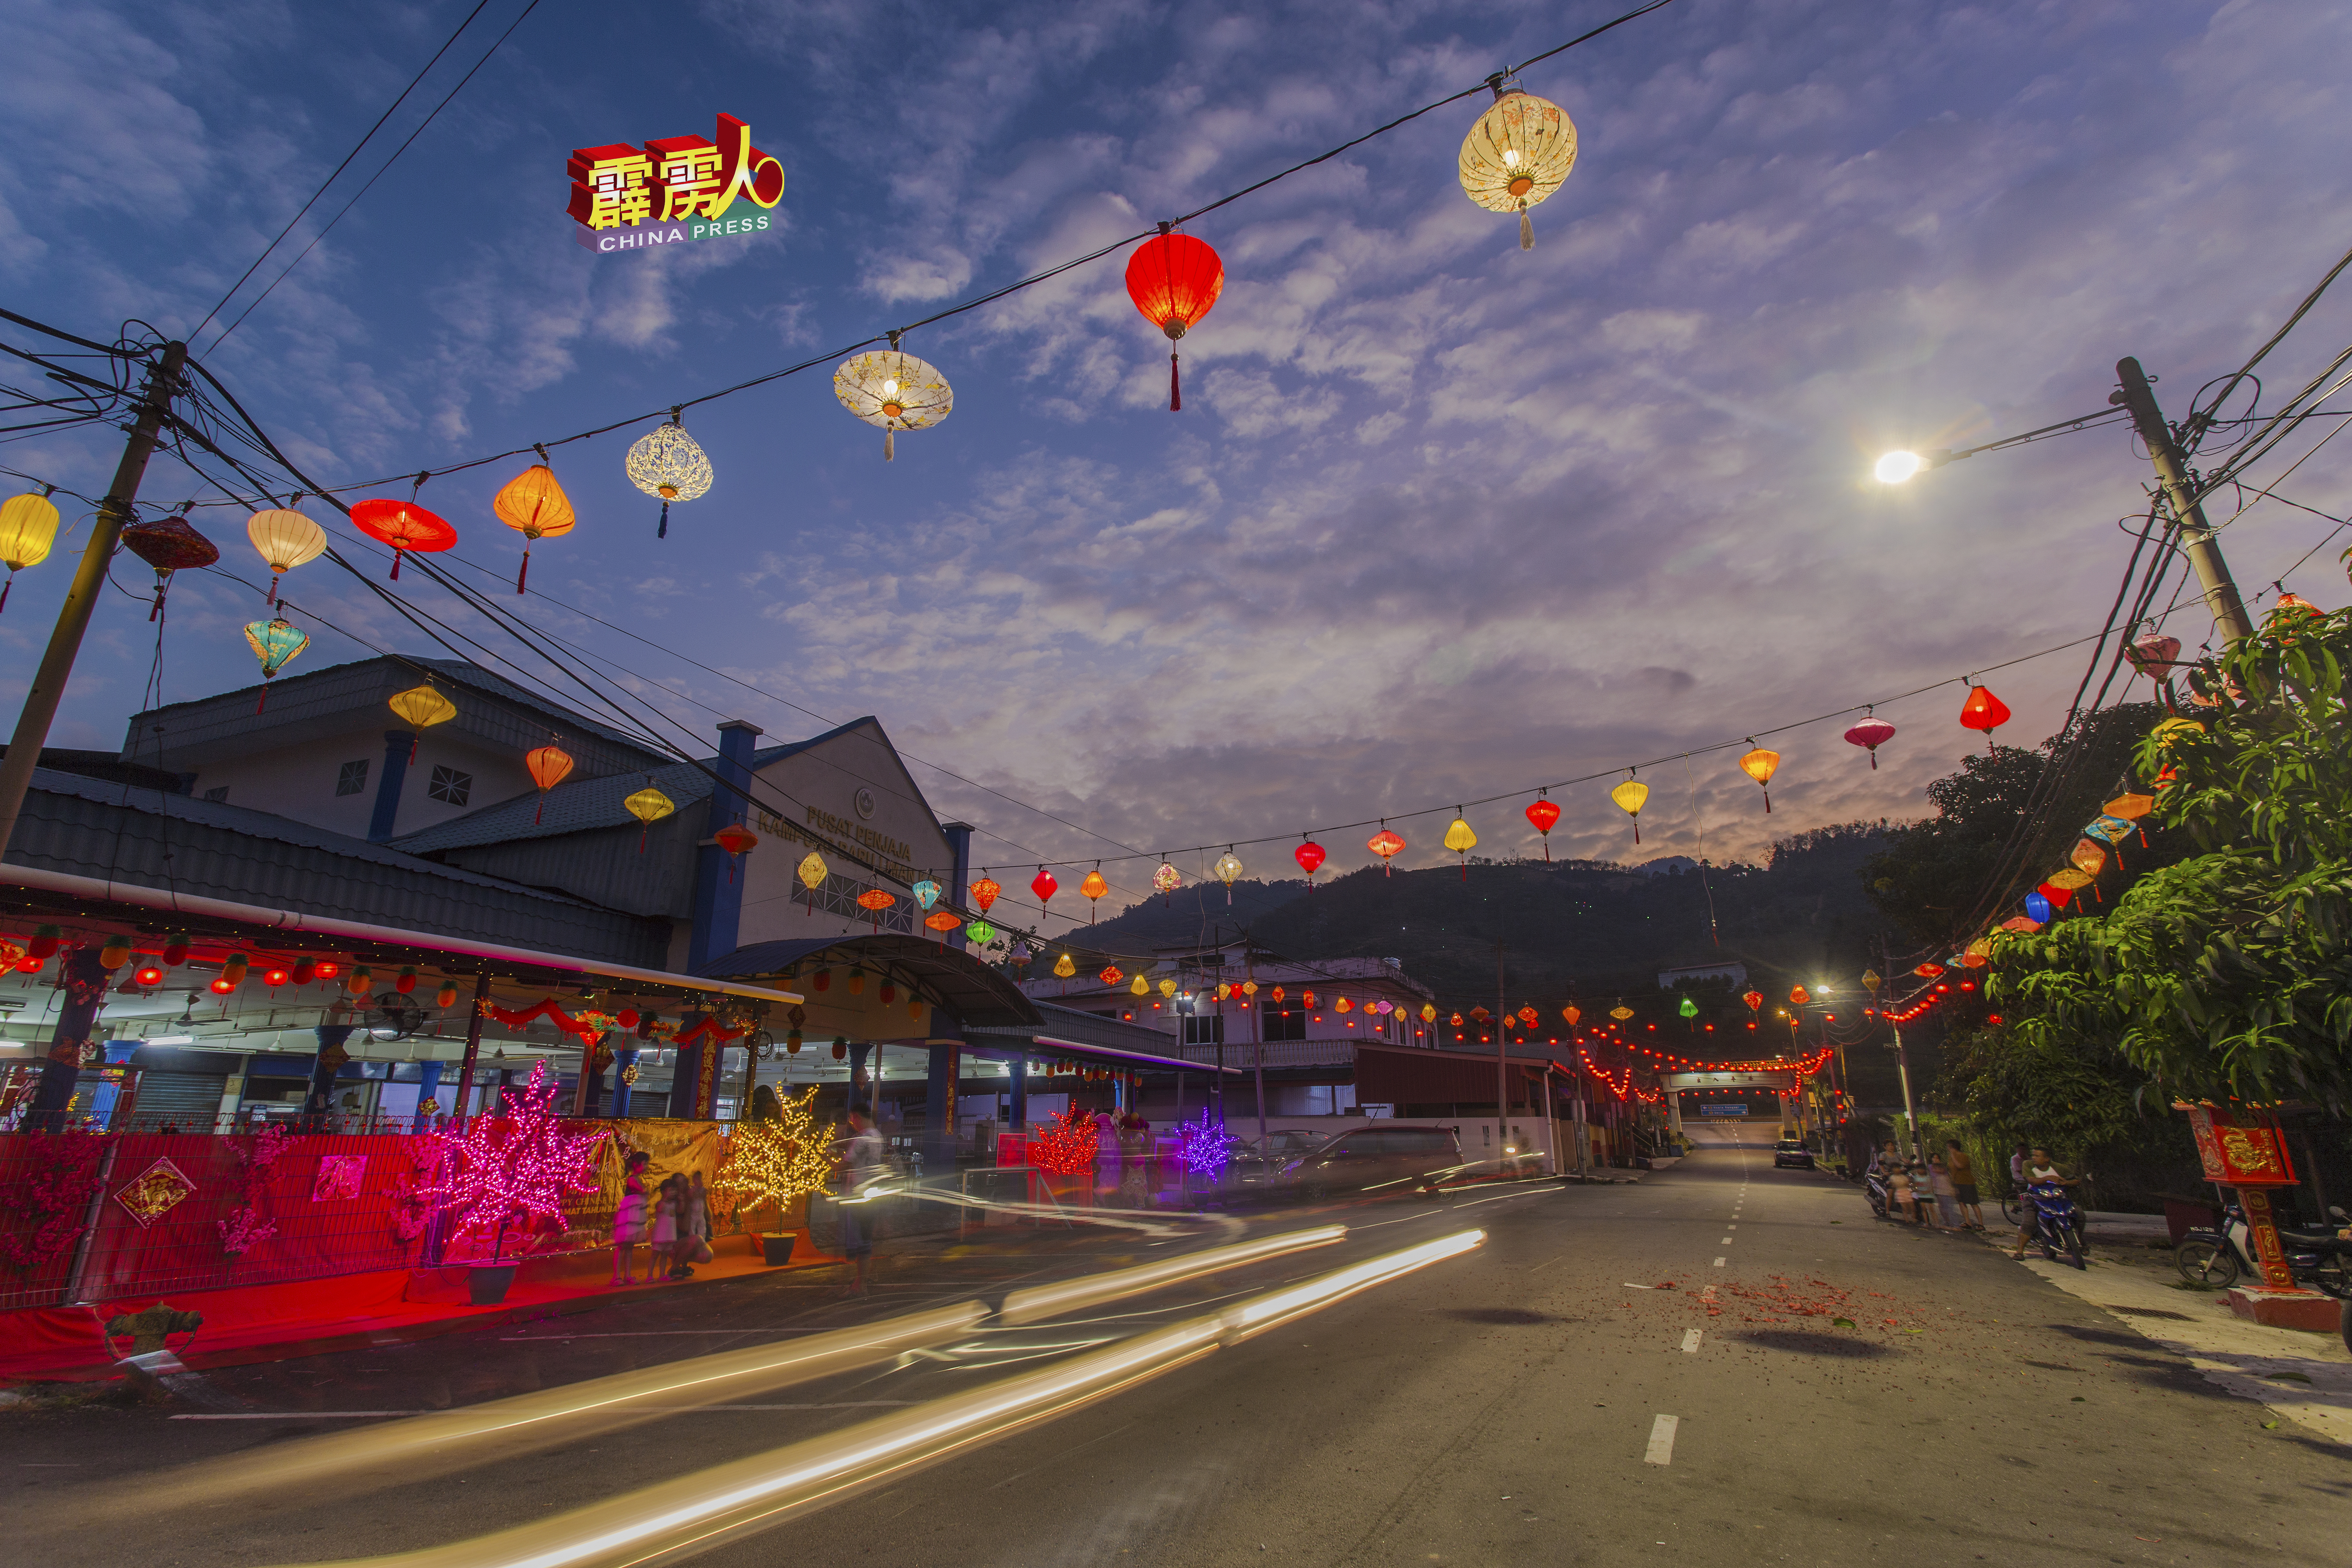 江沙利民加地已完成新春布置及亮灯，成为江沙区最亮眼及春节气氛最浓的华人新村之一。